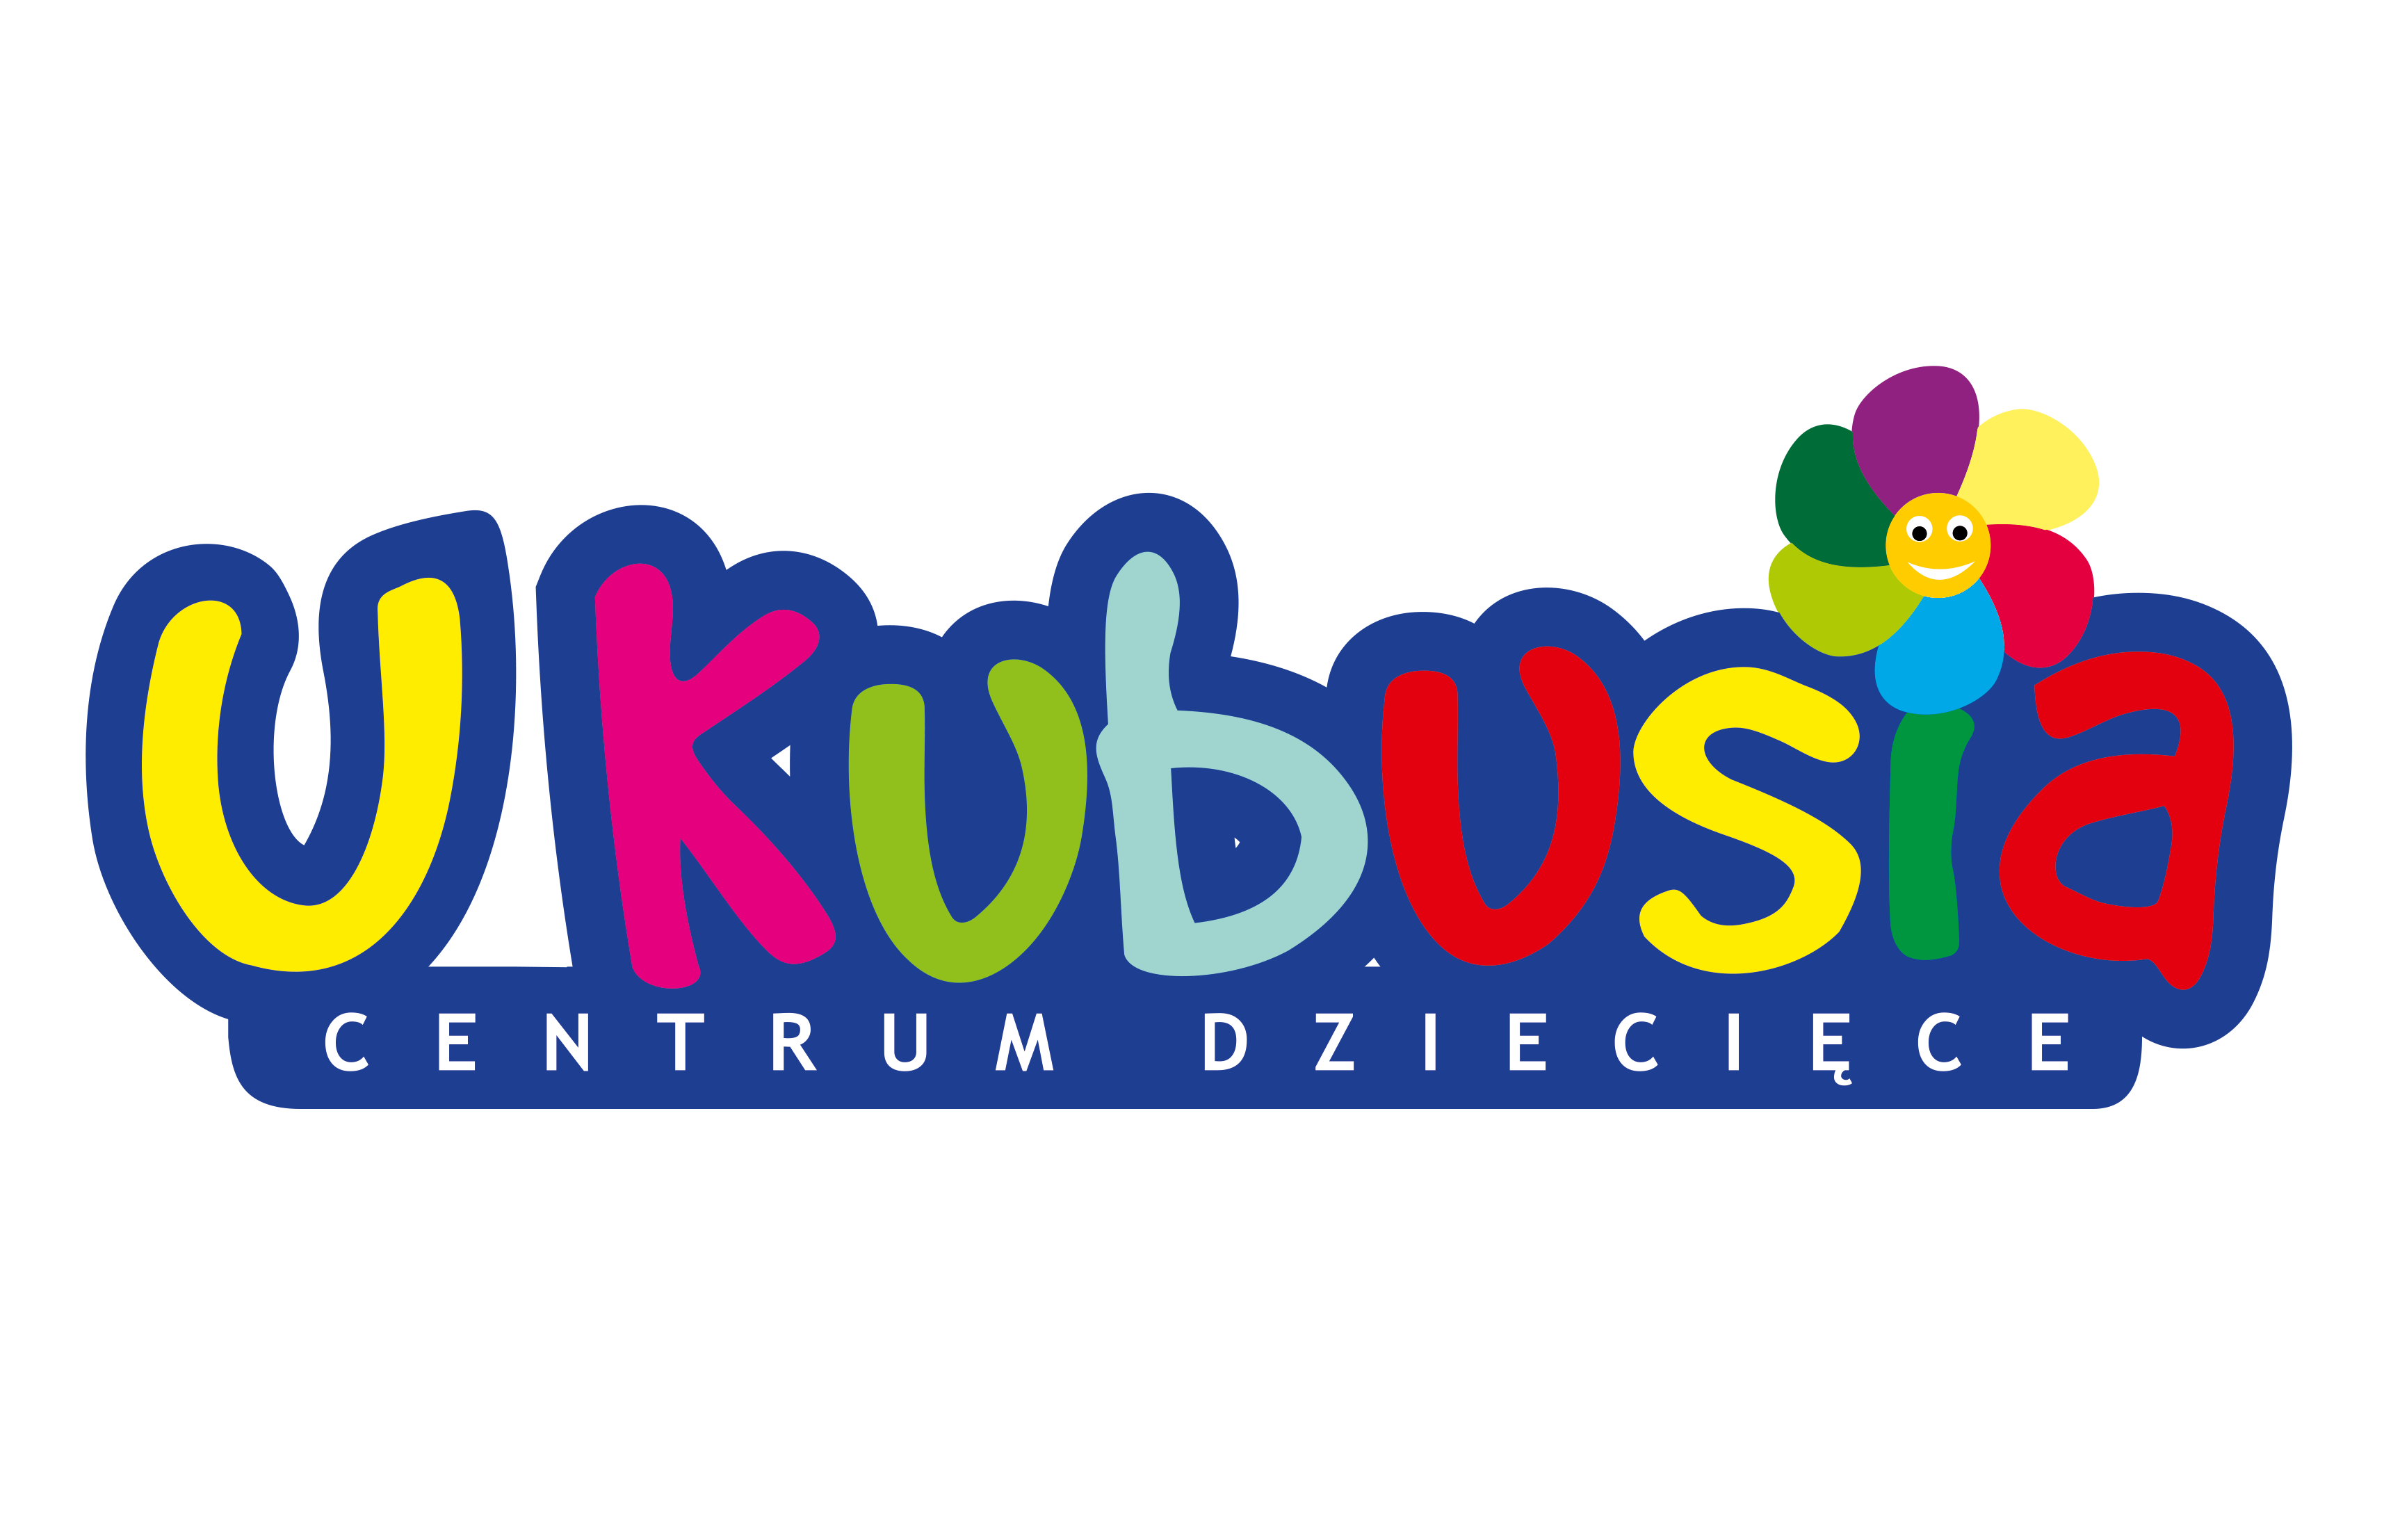 U_KUBUSIA